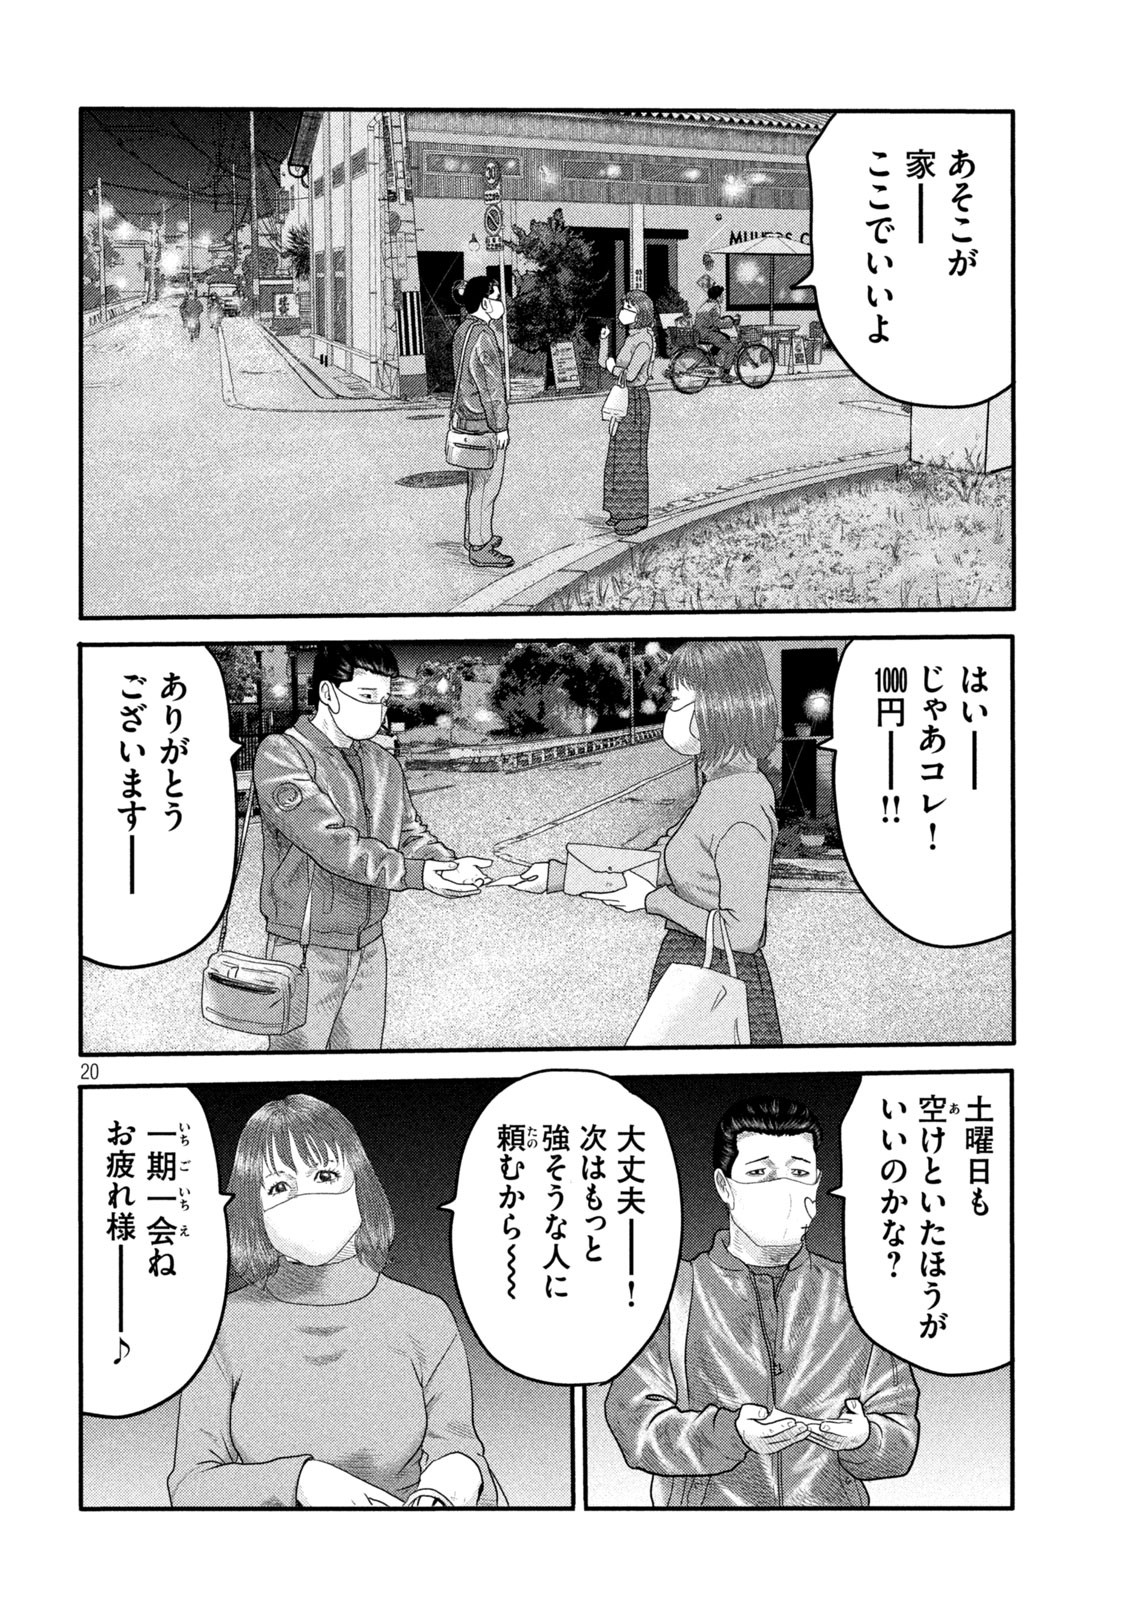 ザ・ファブル The Second Contact 第2話 - Page 20